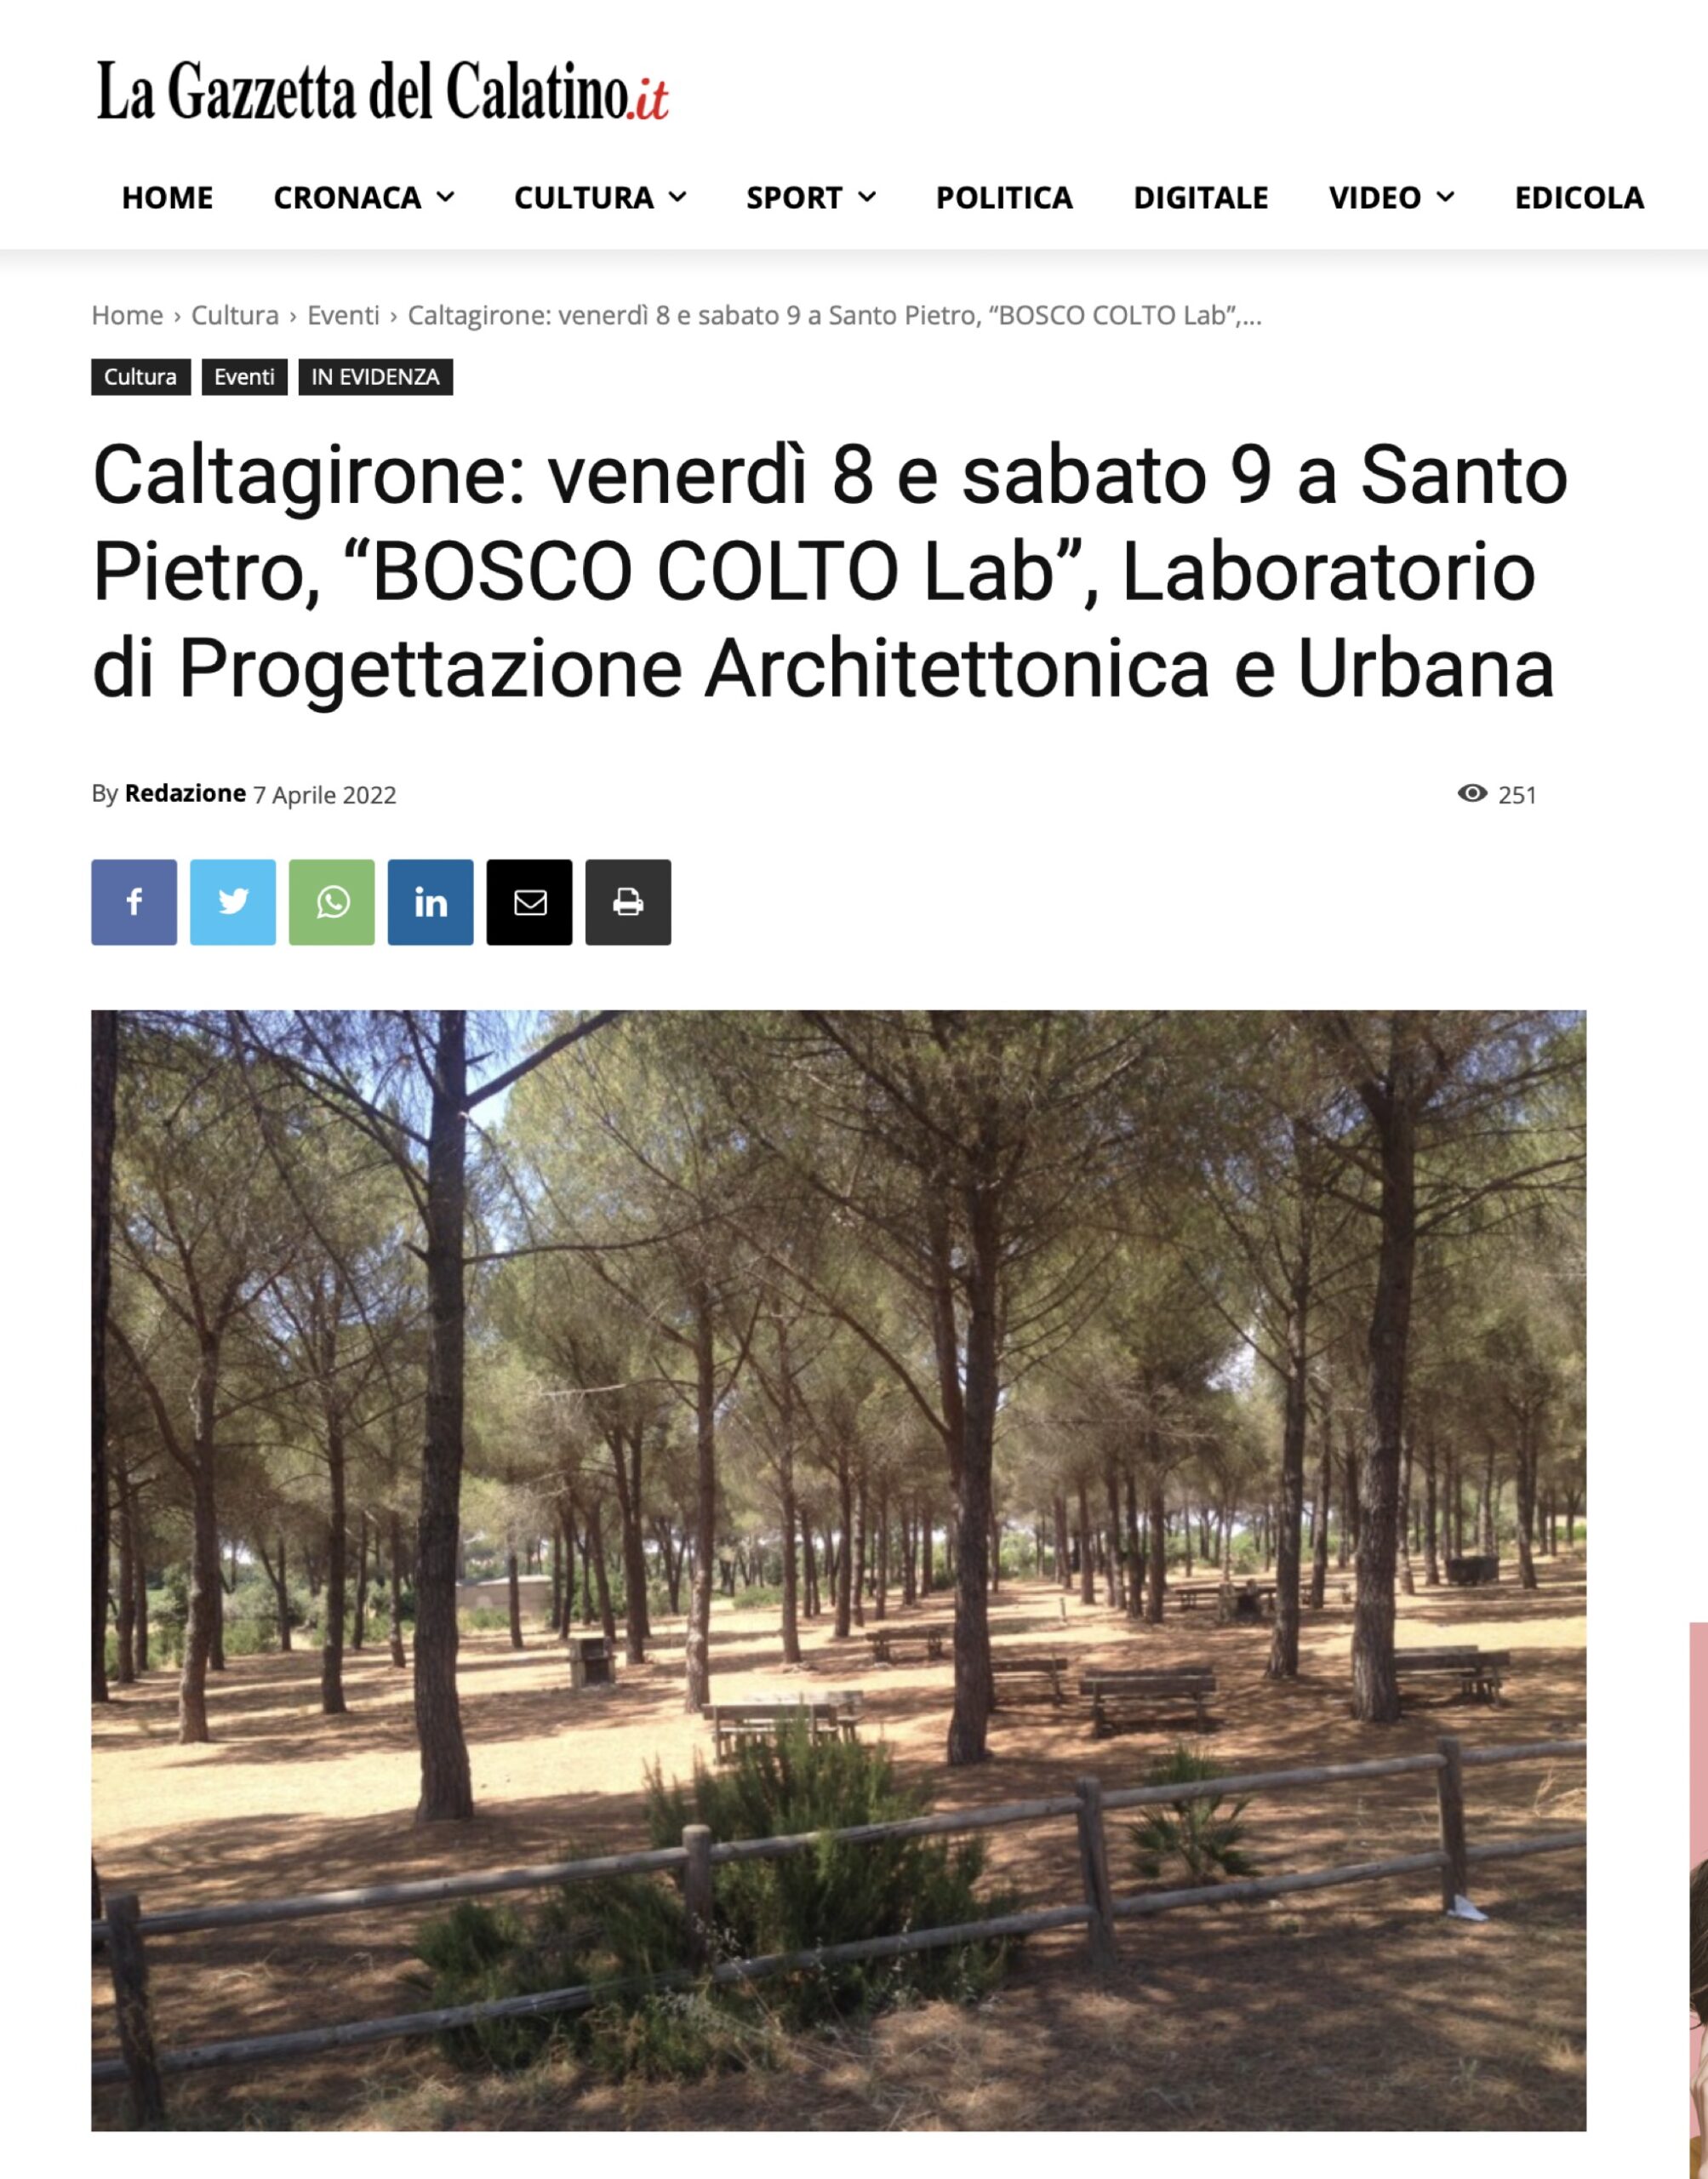 https://www.lagazzettadelcalatino.it/2022/04/caltagirone-venerdi-8-e-sabato-9-a-santo-pietro-bosco-colto-lab-laboratorio-di-progettazione-architettonica-e-urbana/